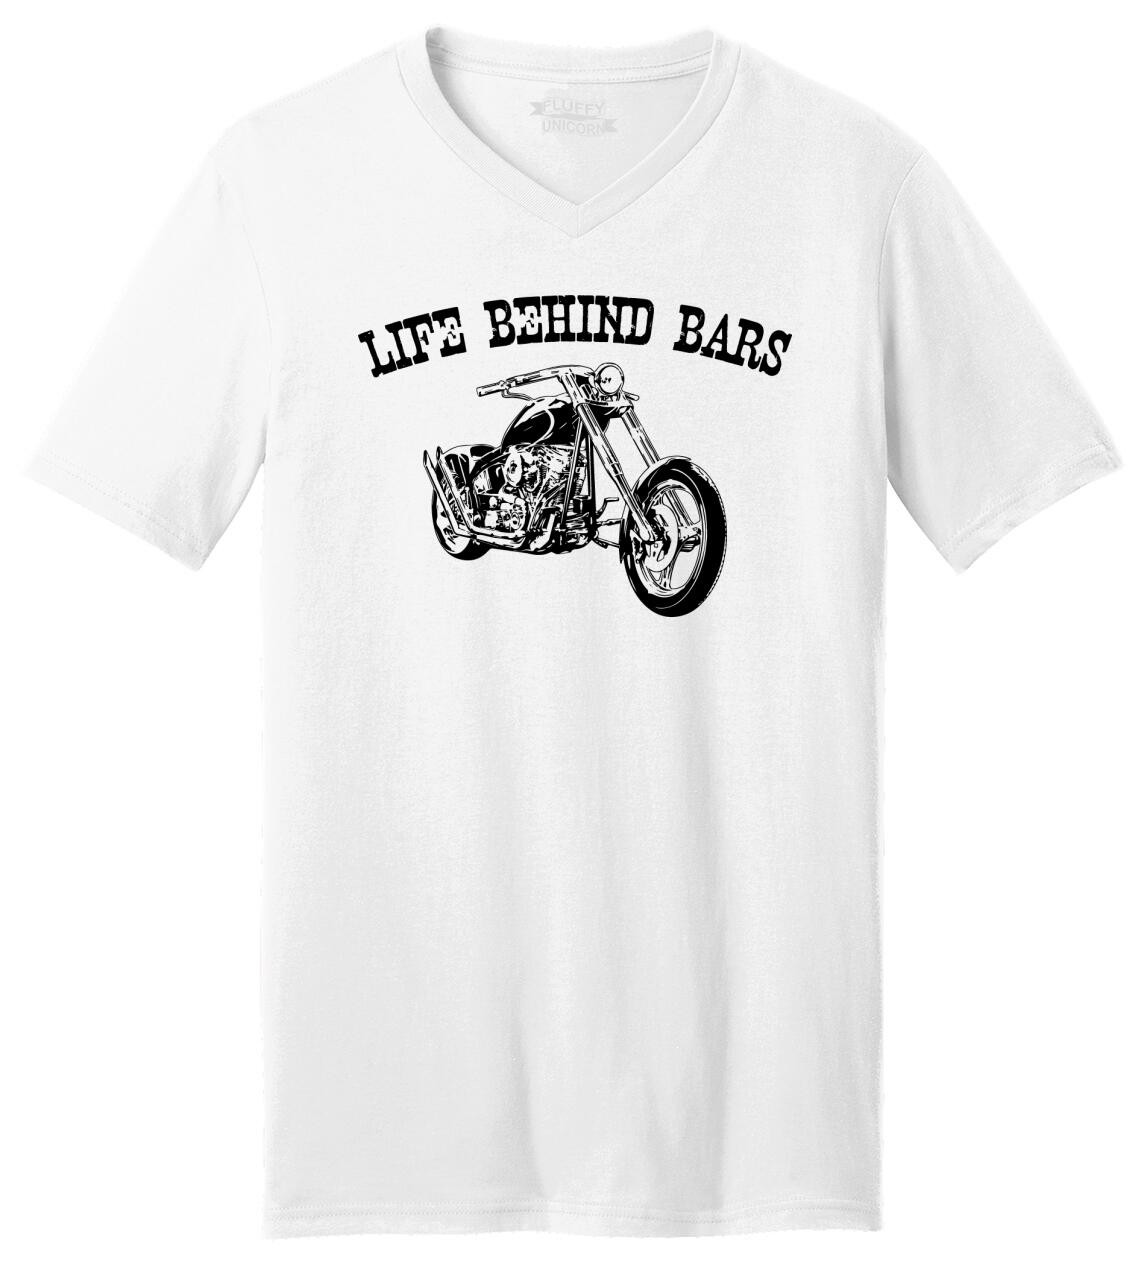 Life Behind Bars Motorcycle Mens And Womens Tee Shirts And Tank Tops Comical Shirt 